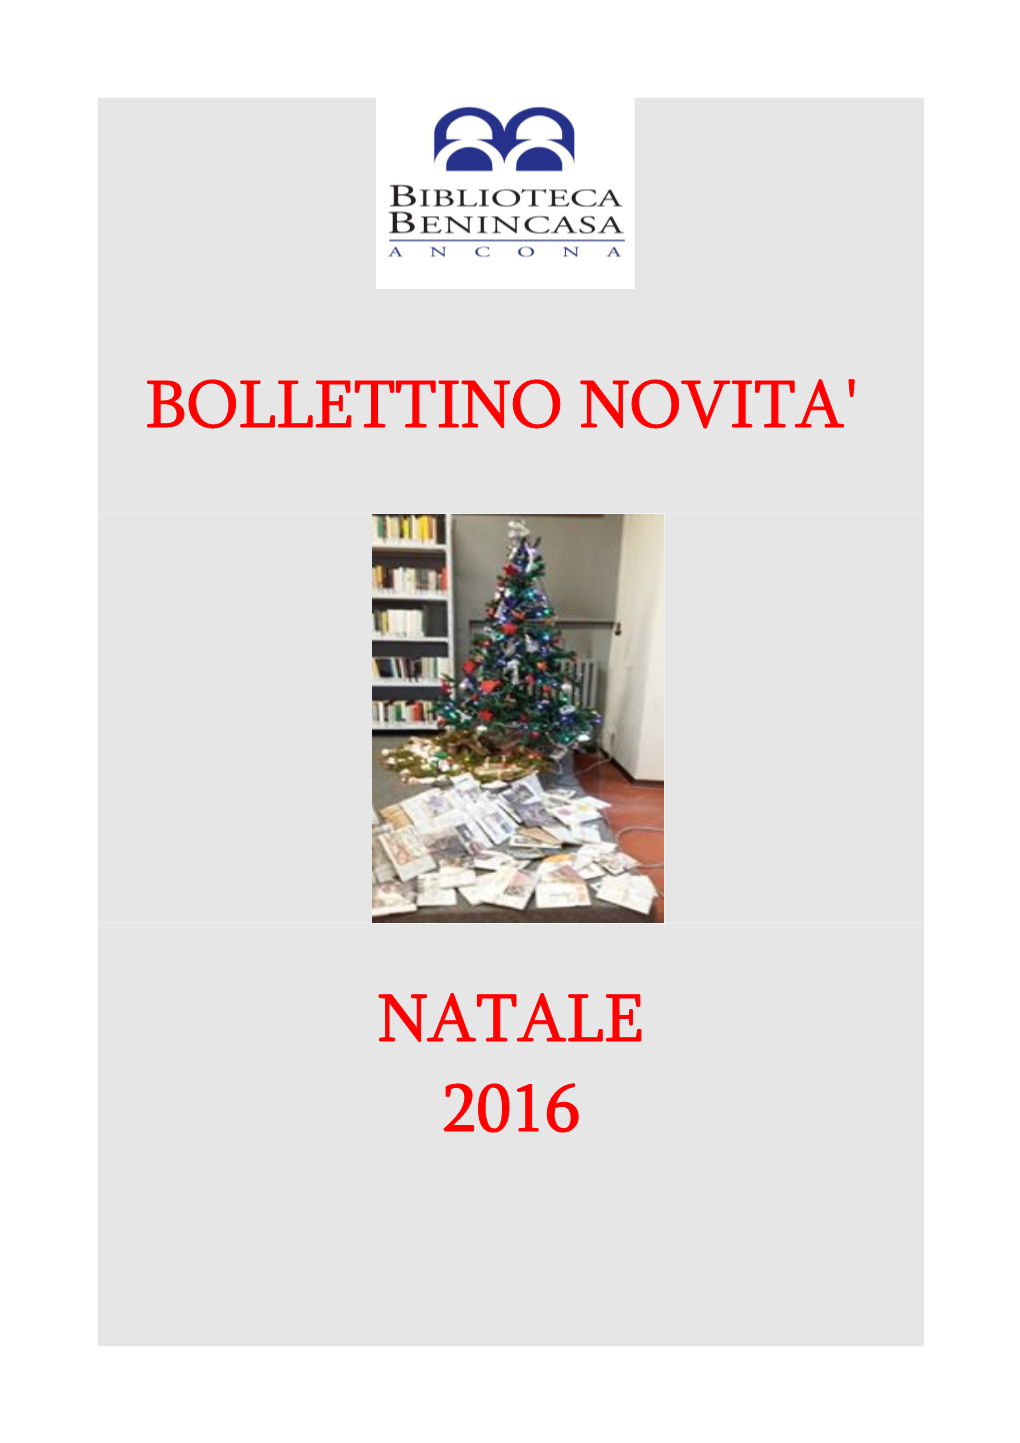 Bollettino Natale 2016